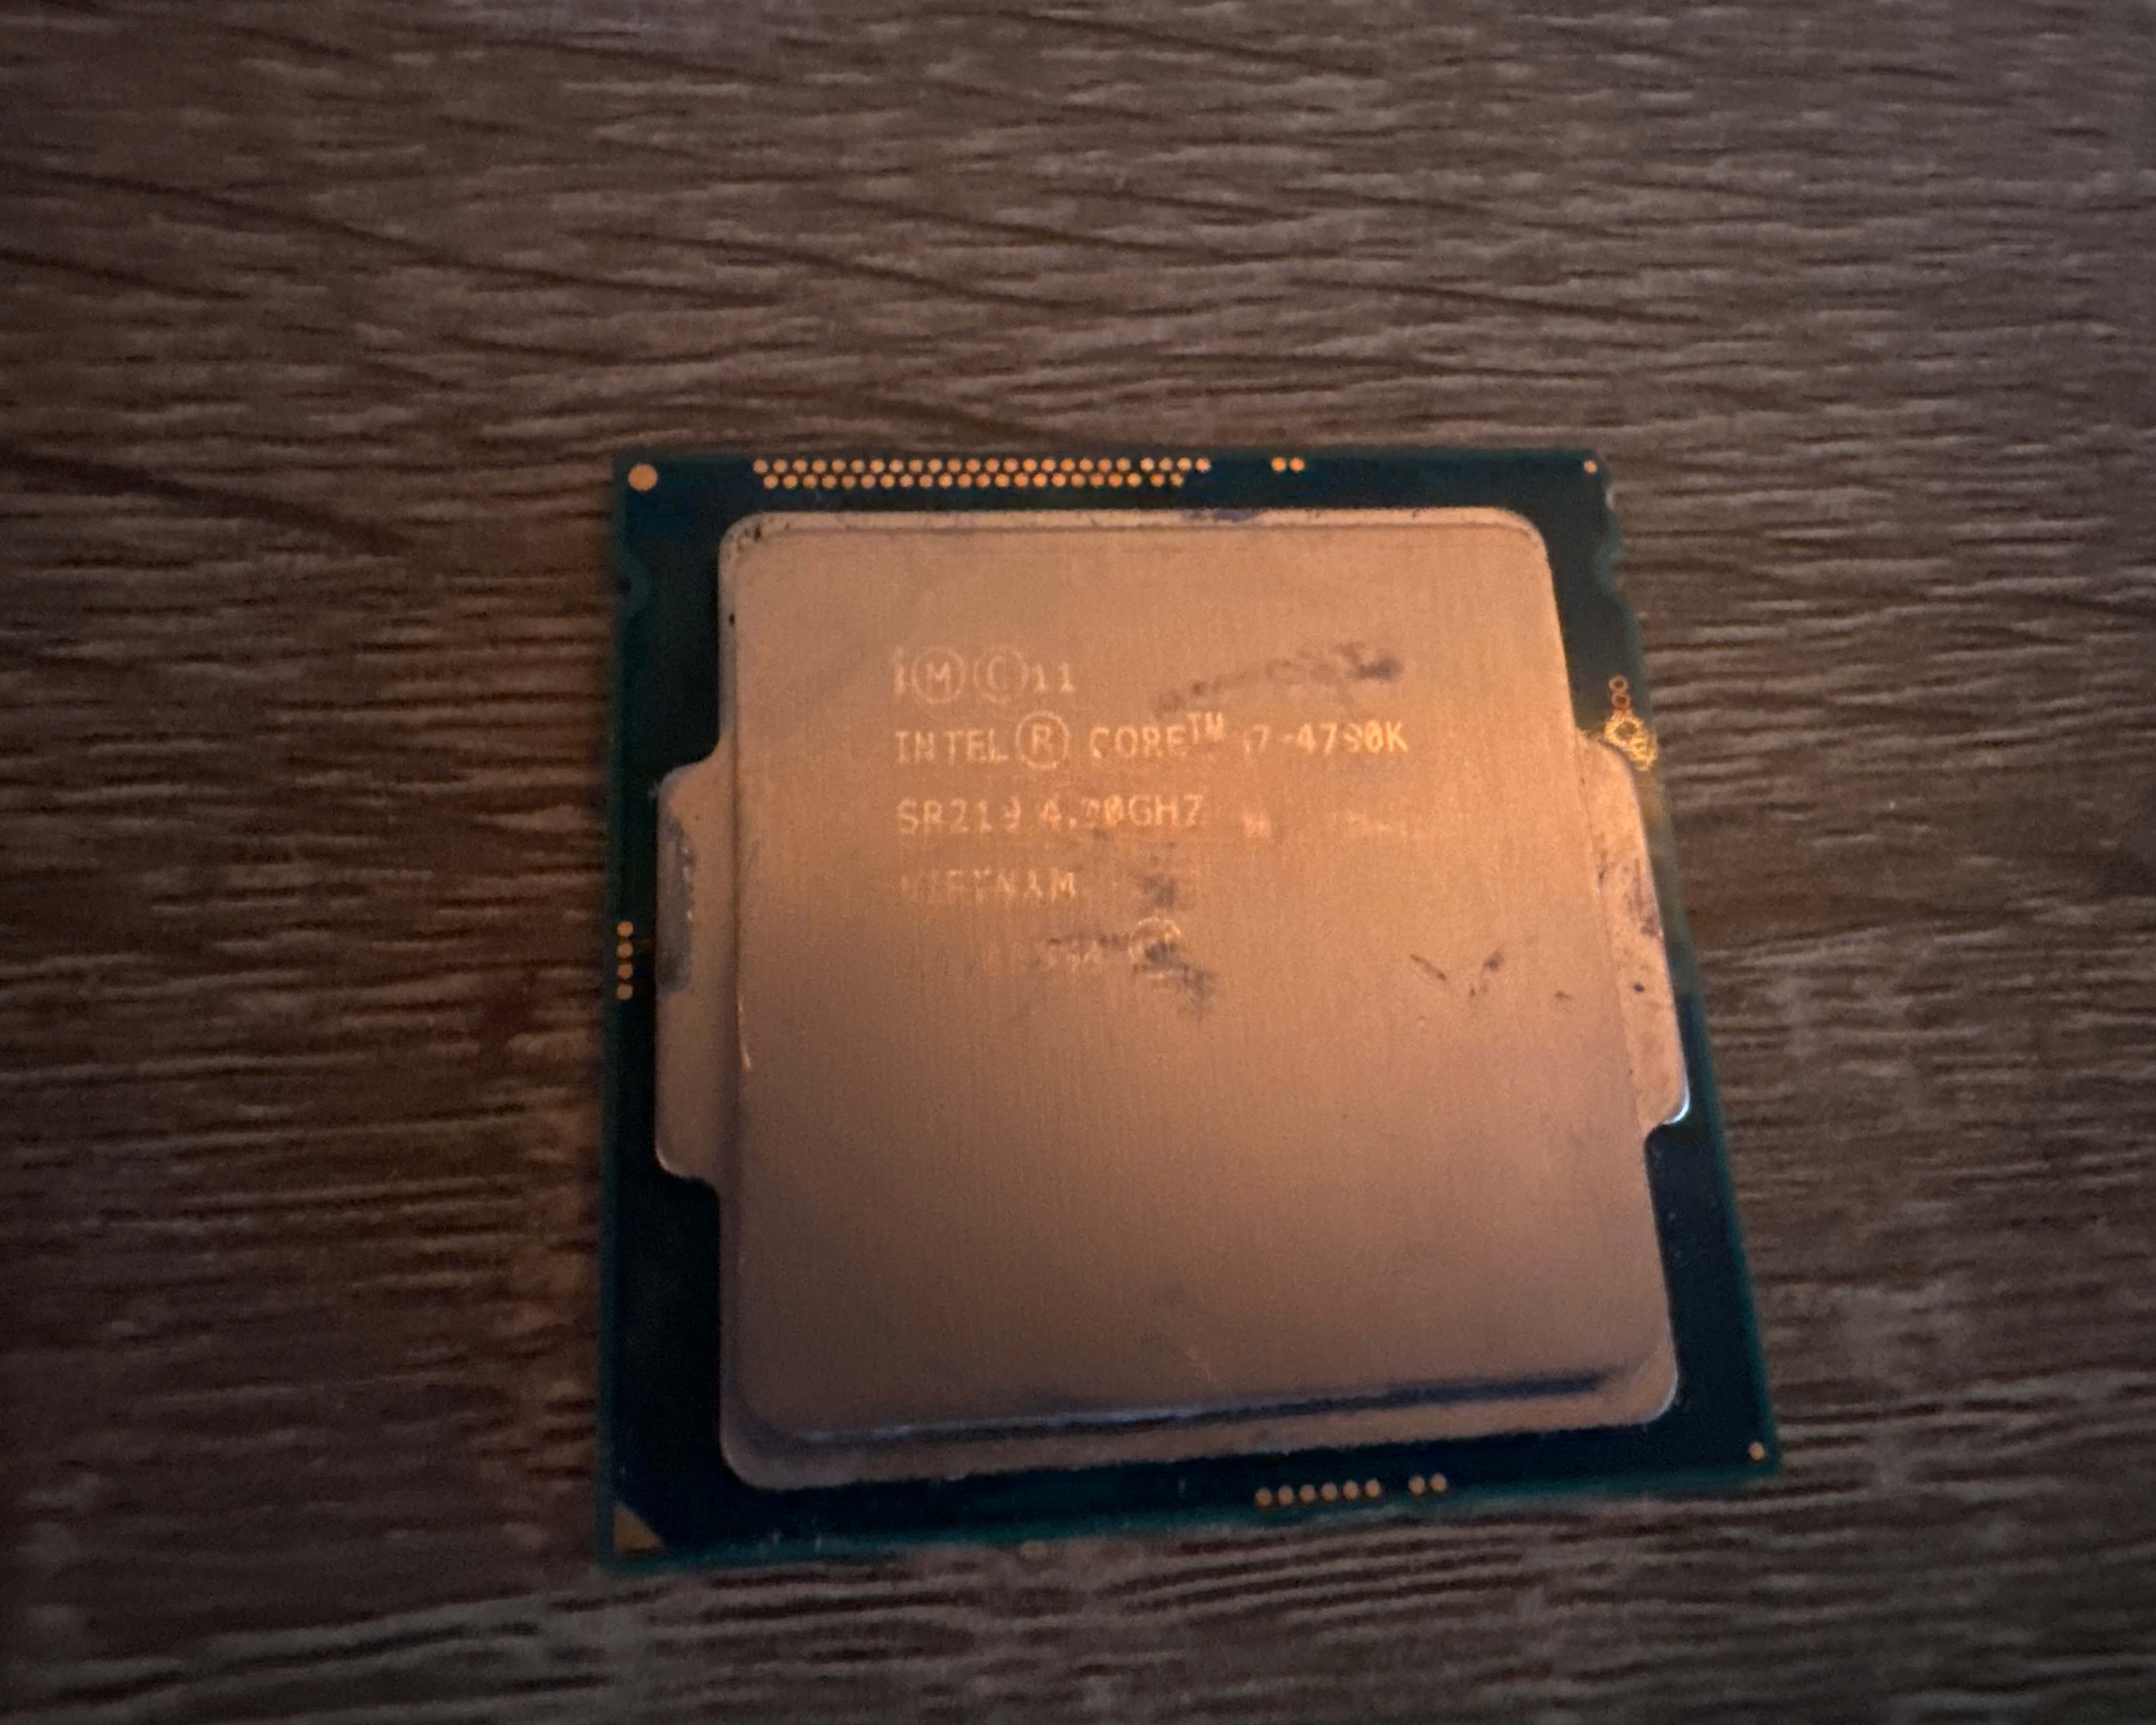 Intel Core i7 4790K CPU